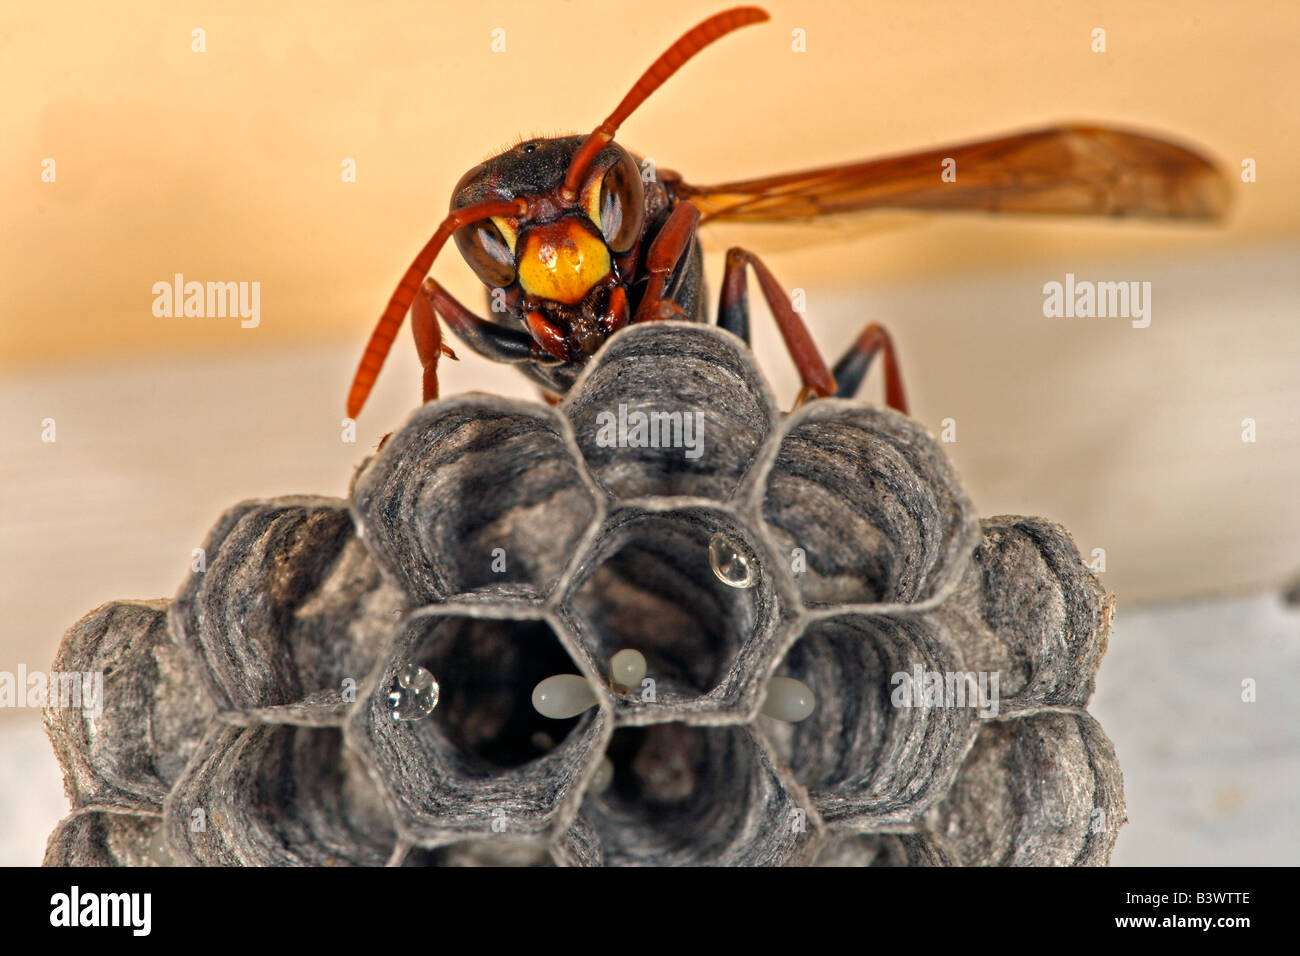 Gemeinsames Papier Wasp (Polistes Humilis) Königin auf Nest zeigt seine zwei großen Facettenaugen. Nest hat Eiern. Australien. Stockfoto